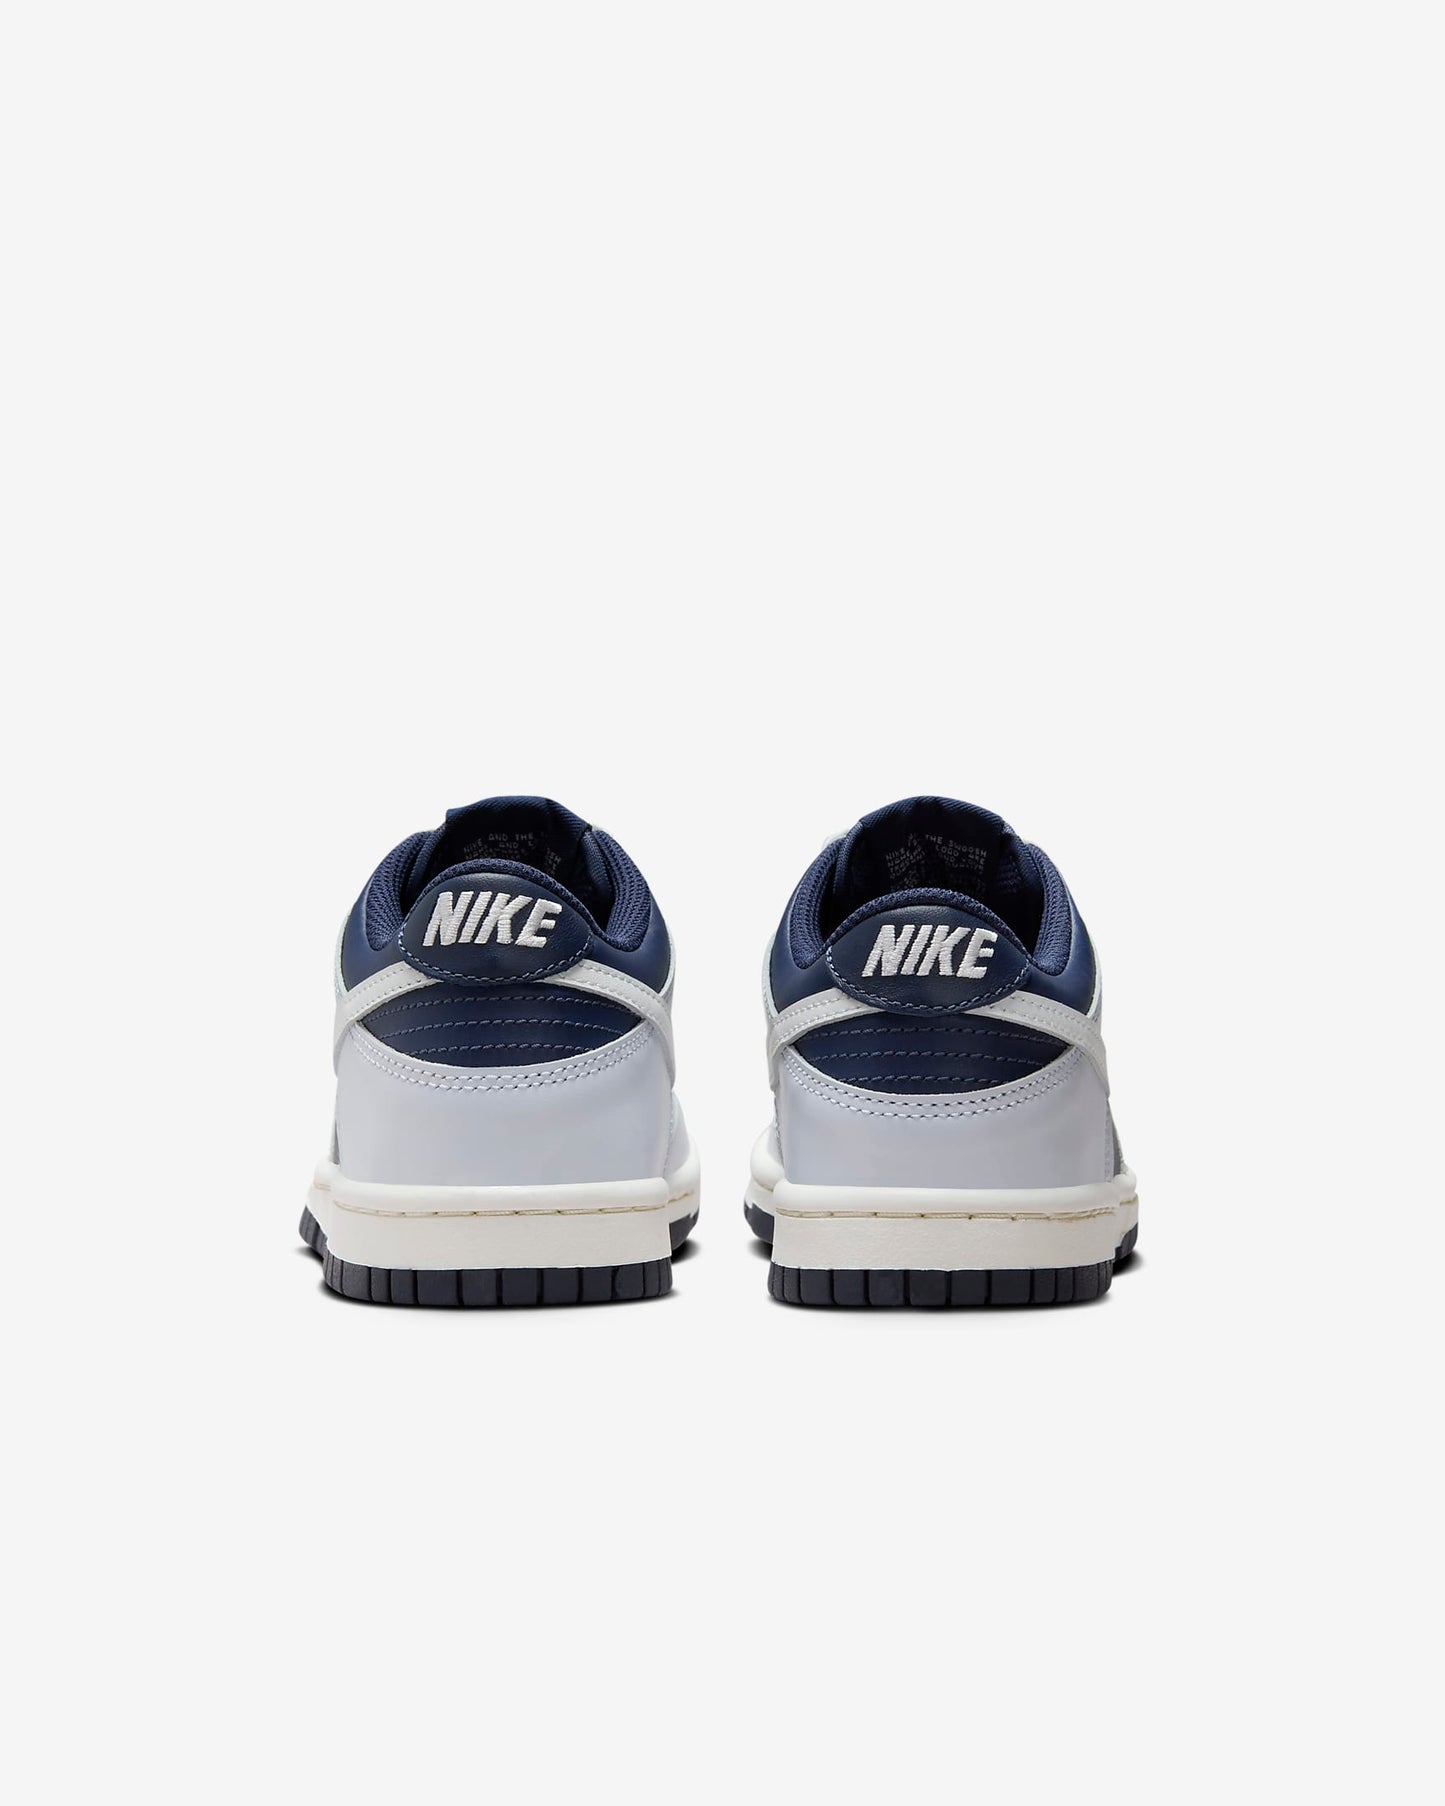 Nike Dunk Grey Shoes